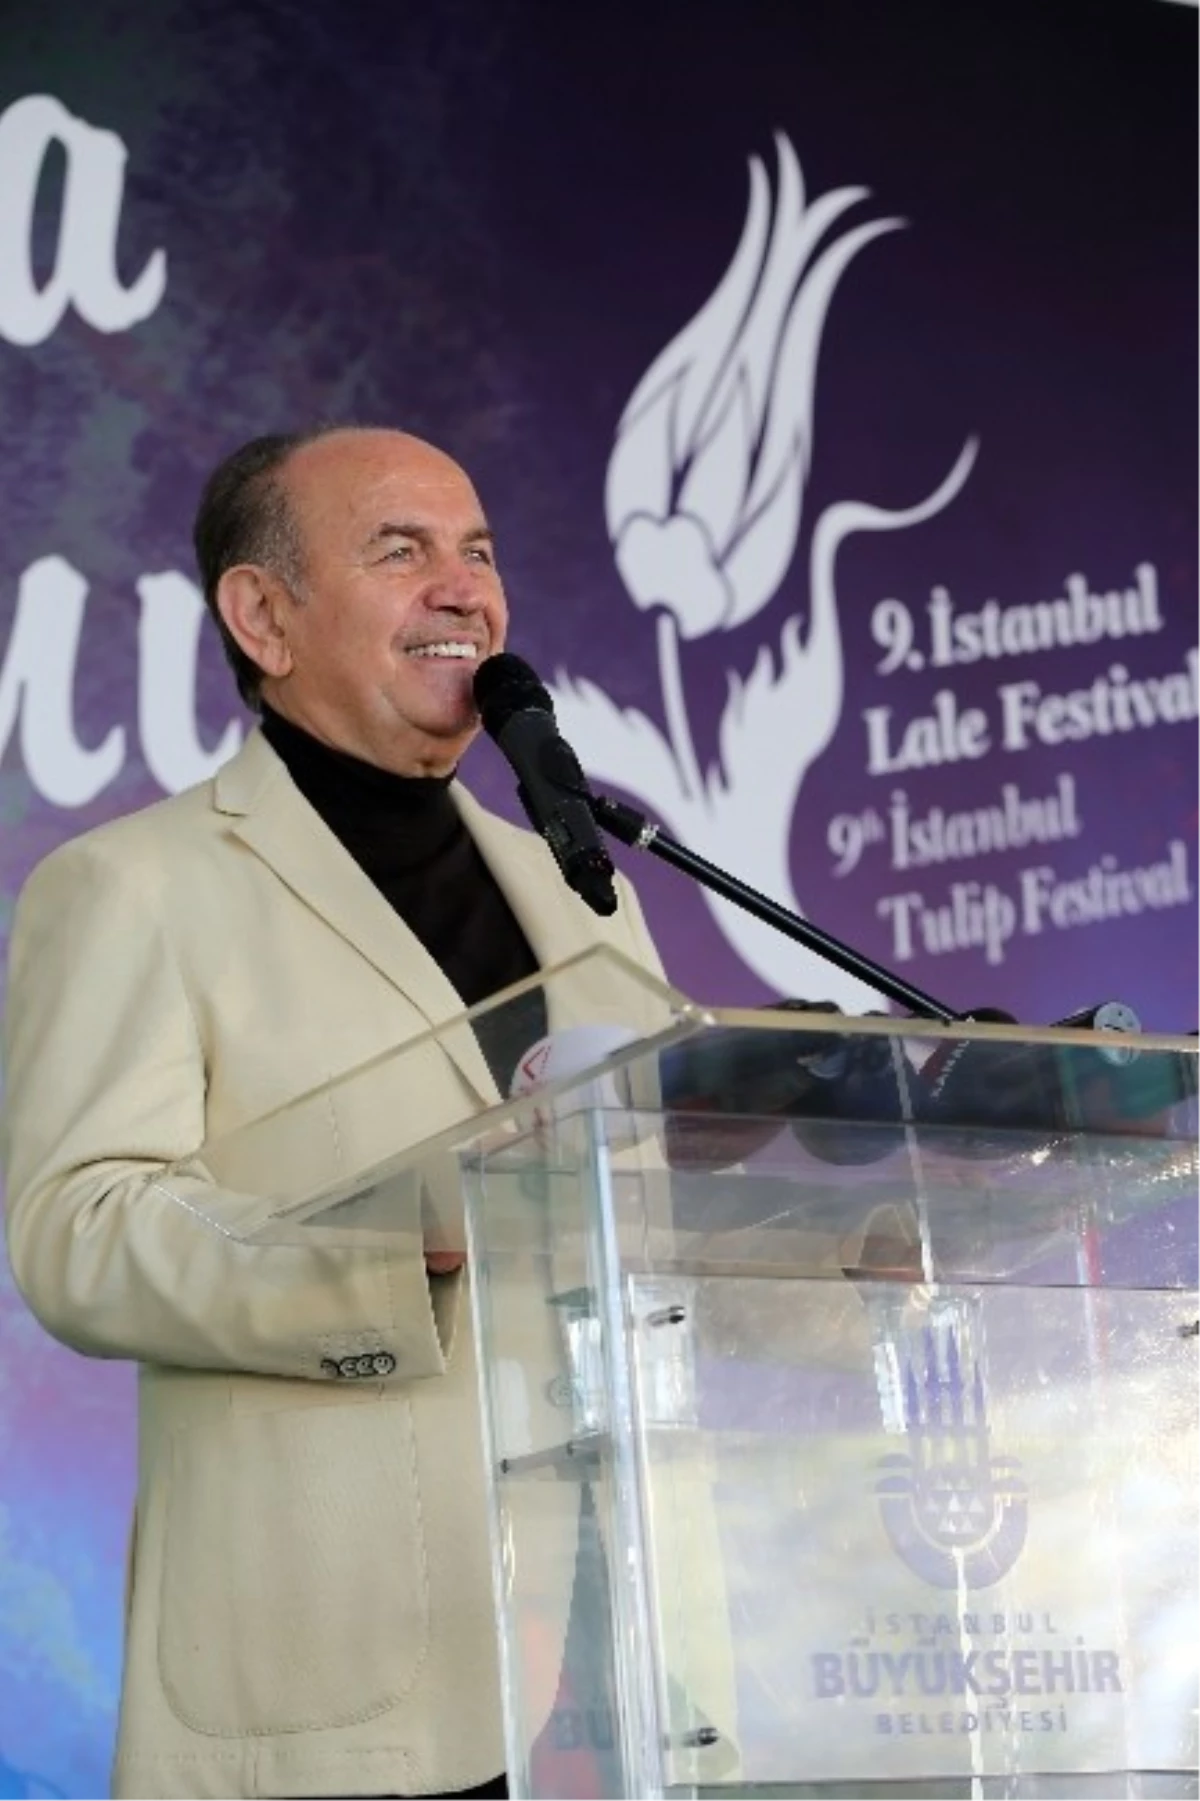 Lale Festivalinin Açılışını Başkan Topbaş Yaptı